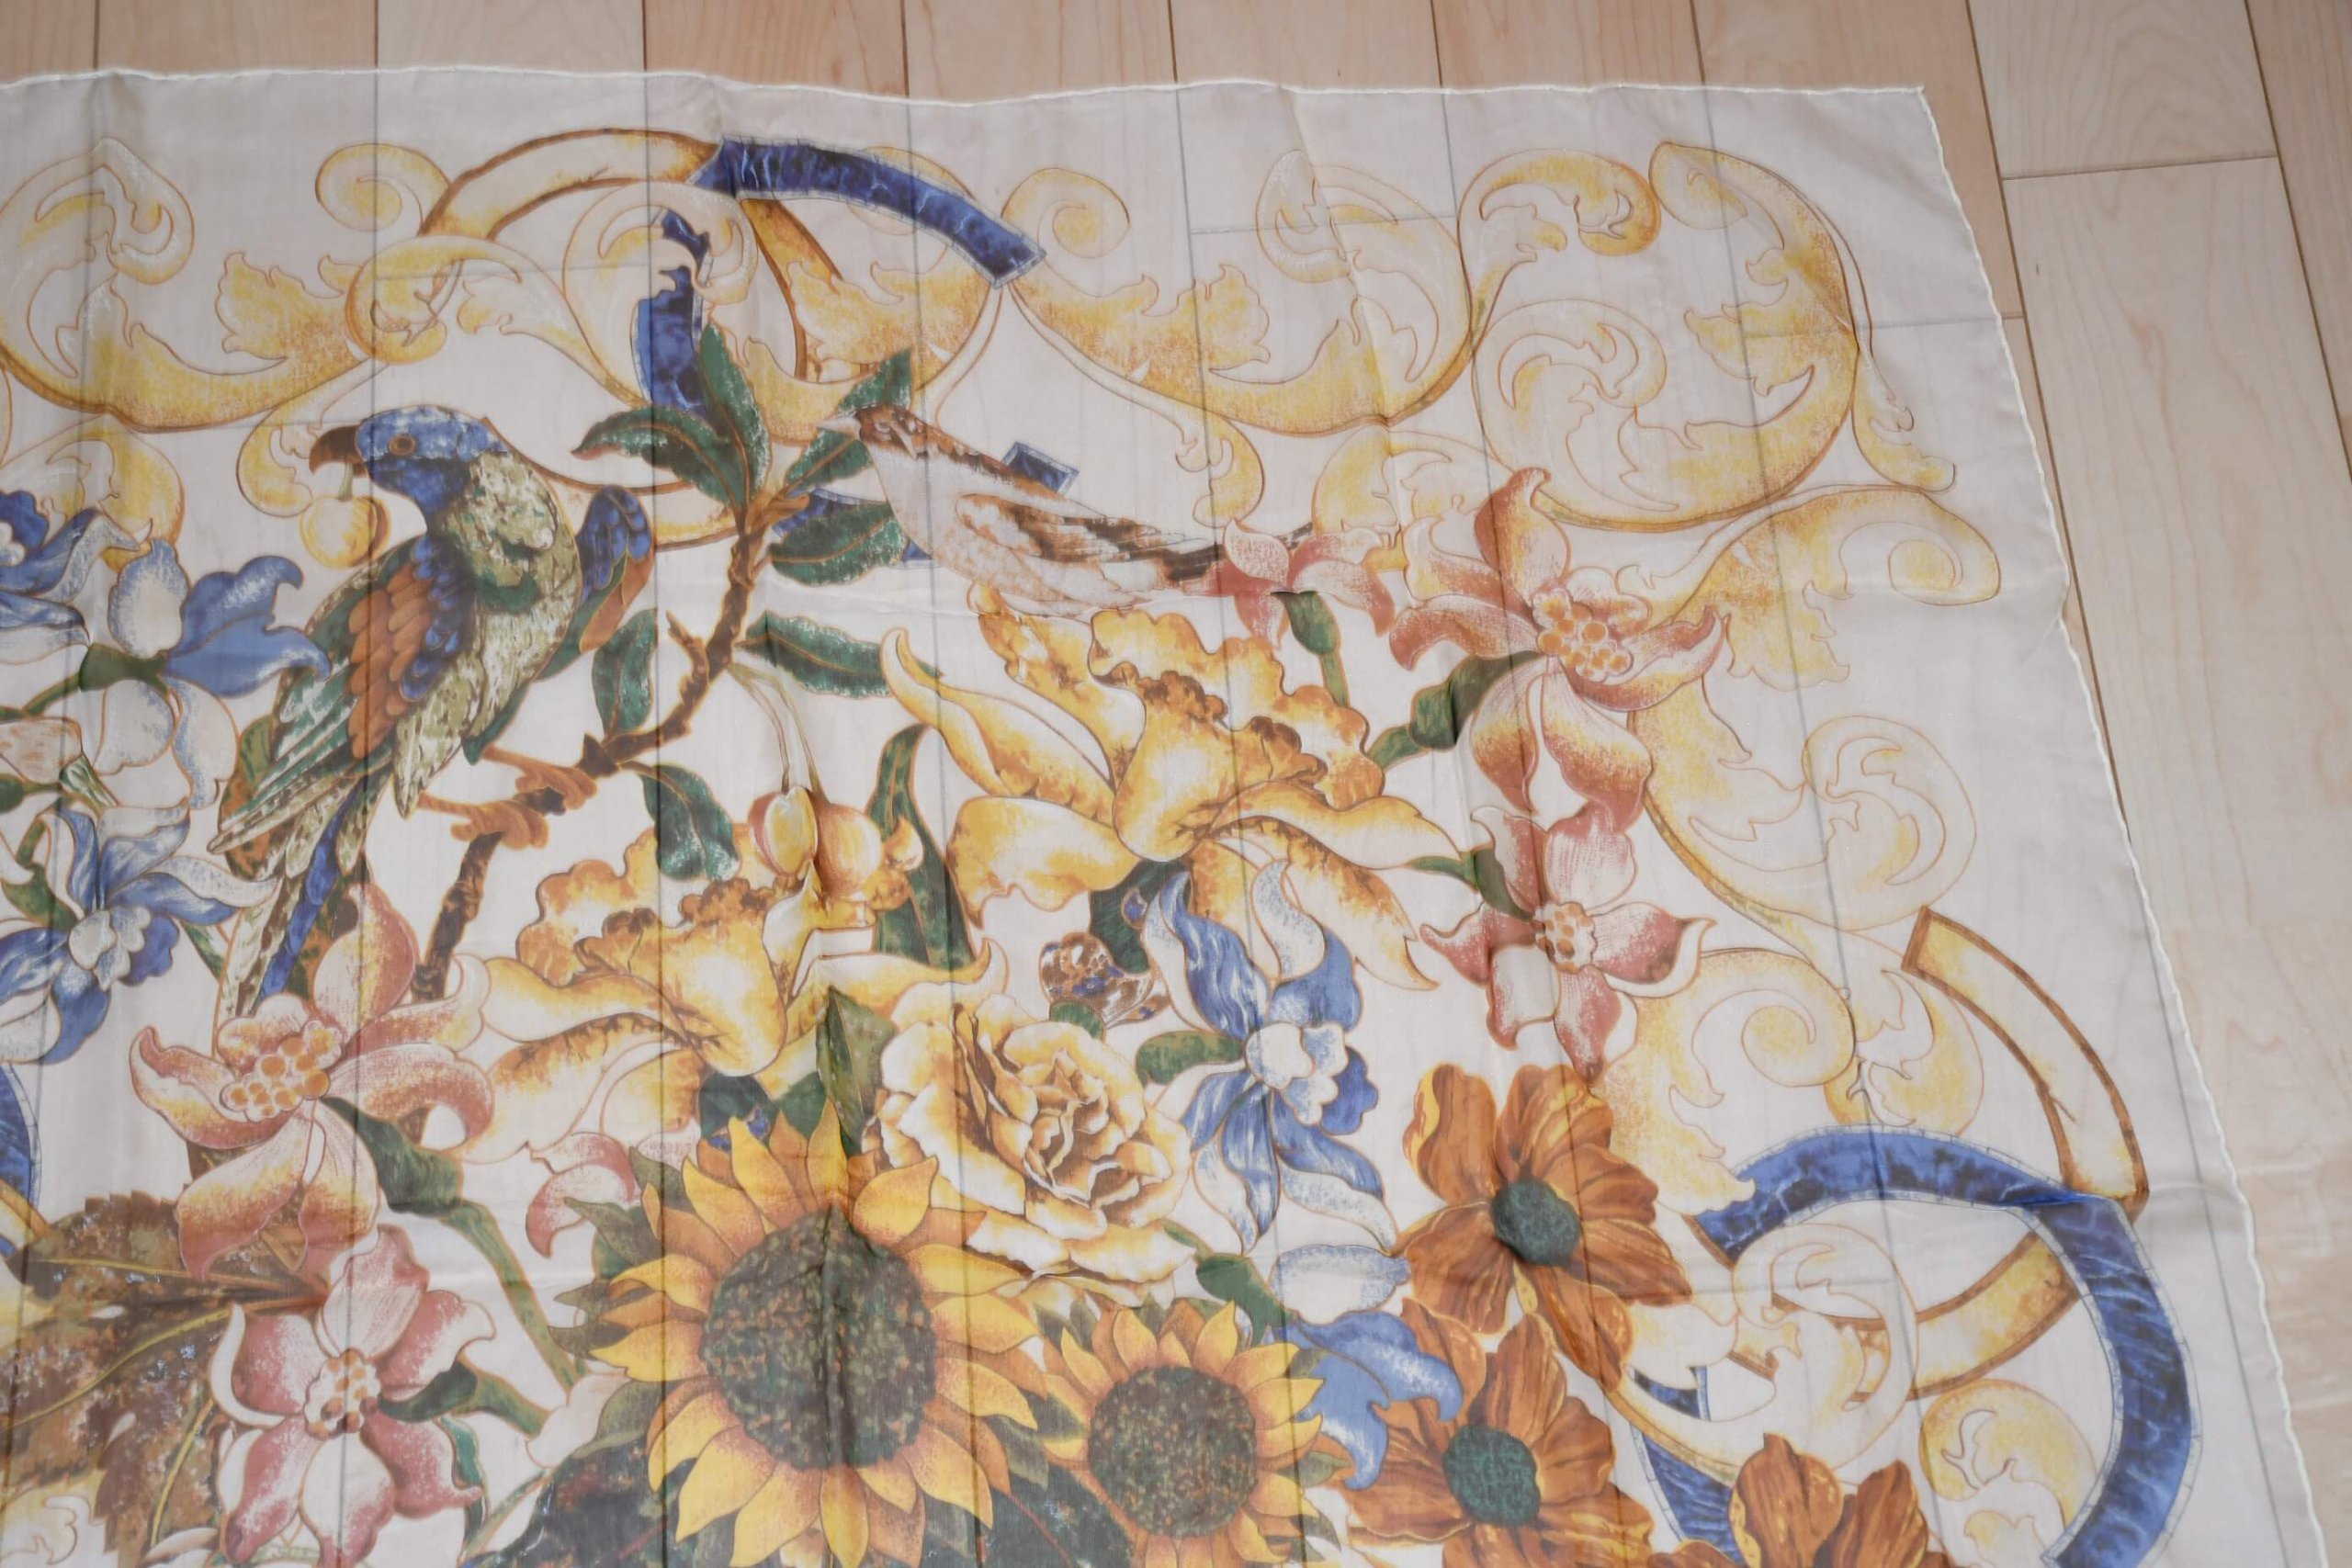 Chanel Sunflower Design Silk Scarf